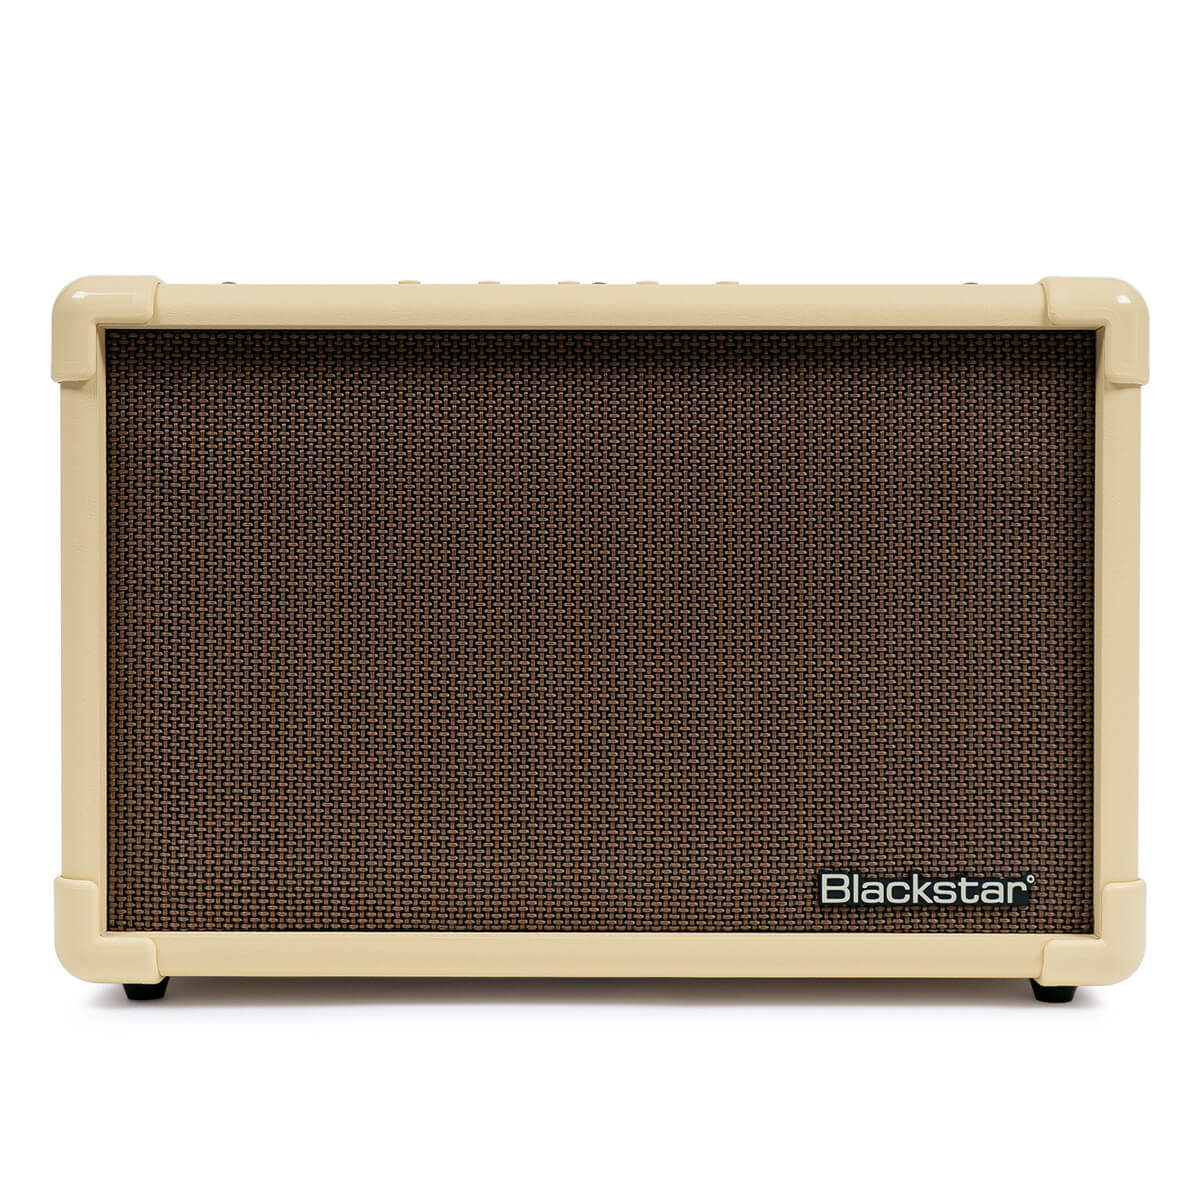 Blackstar Acoustic:CORE 30 guitar amplifier front